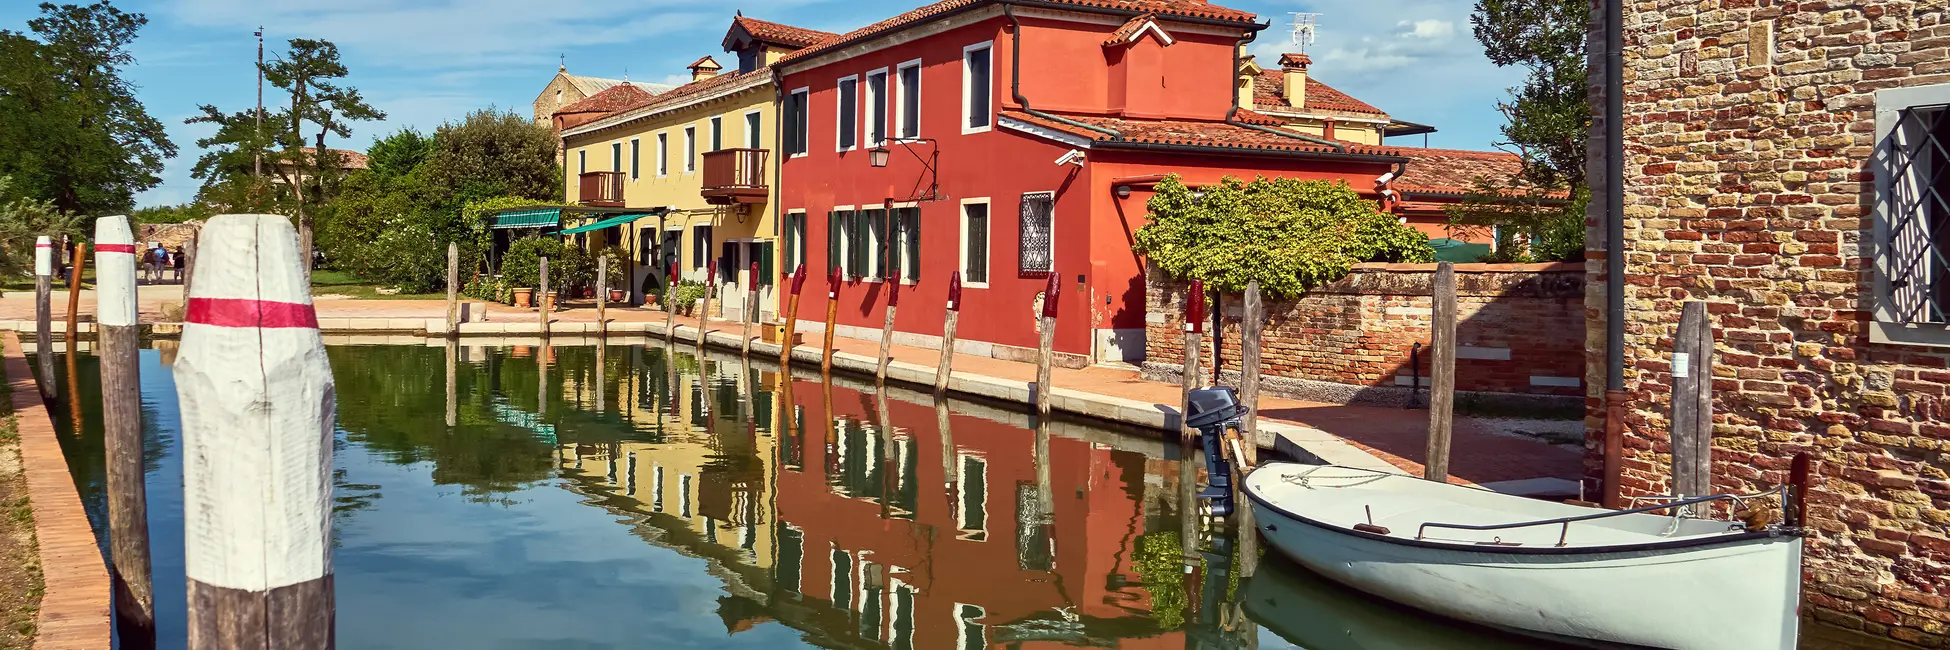 L'île de Torcello et son canal 